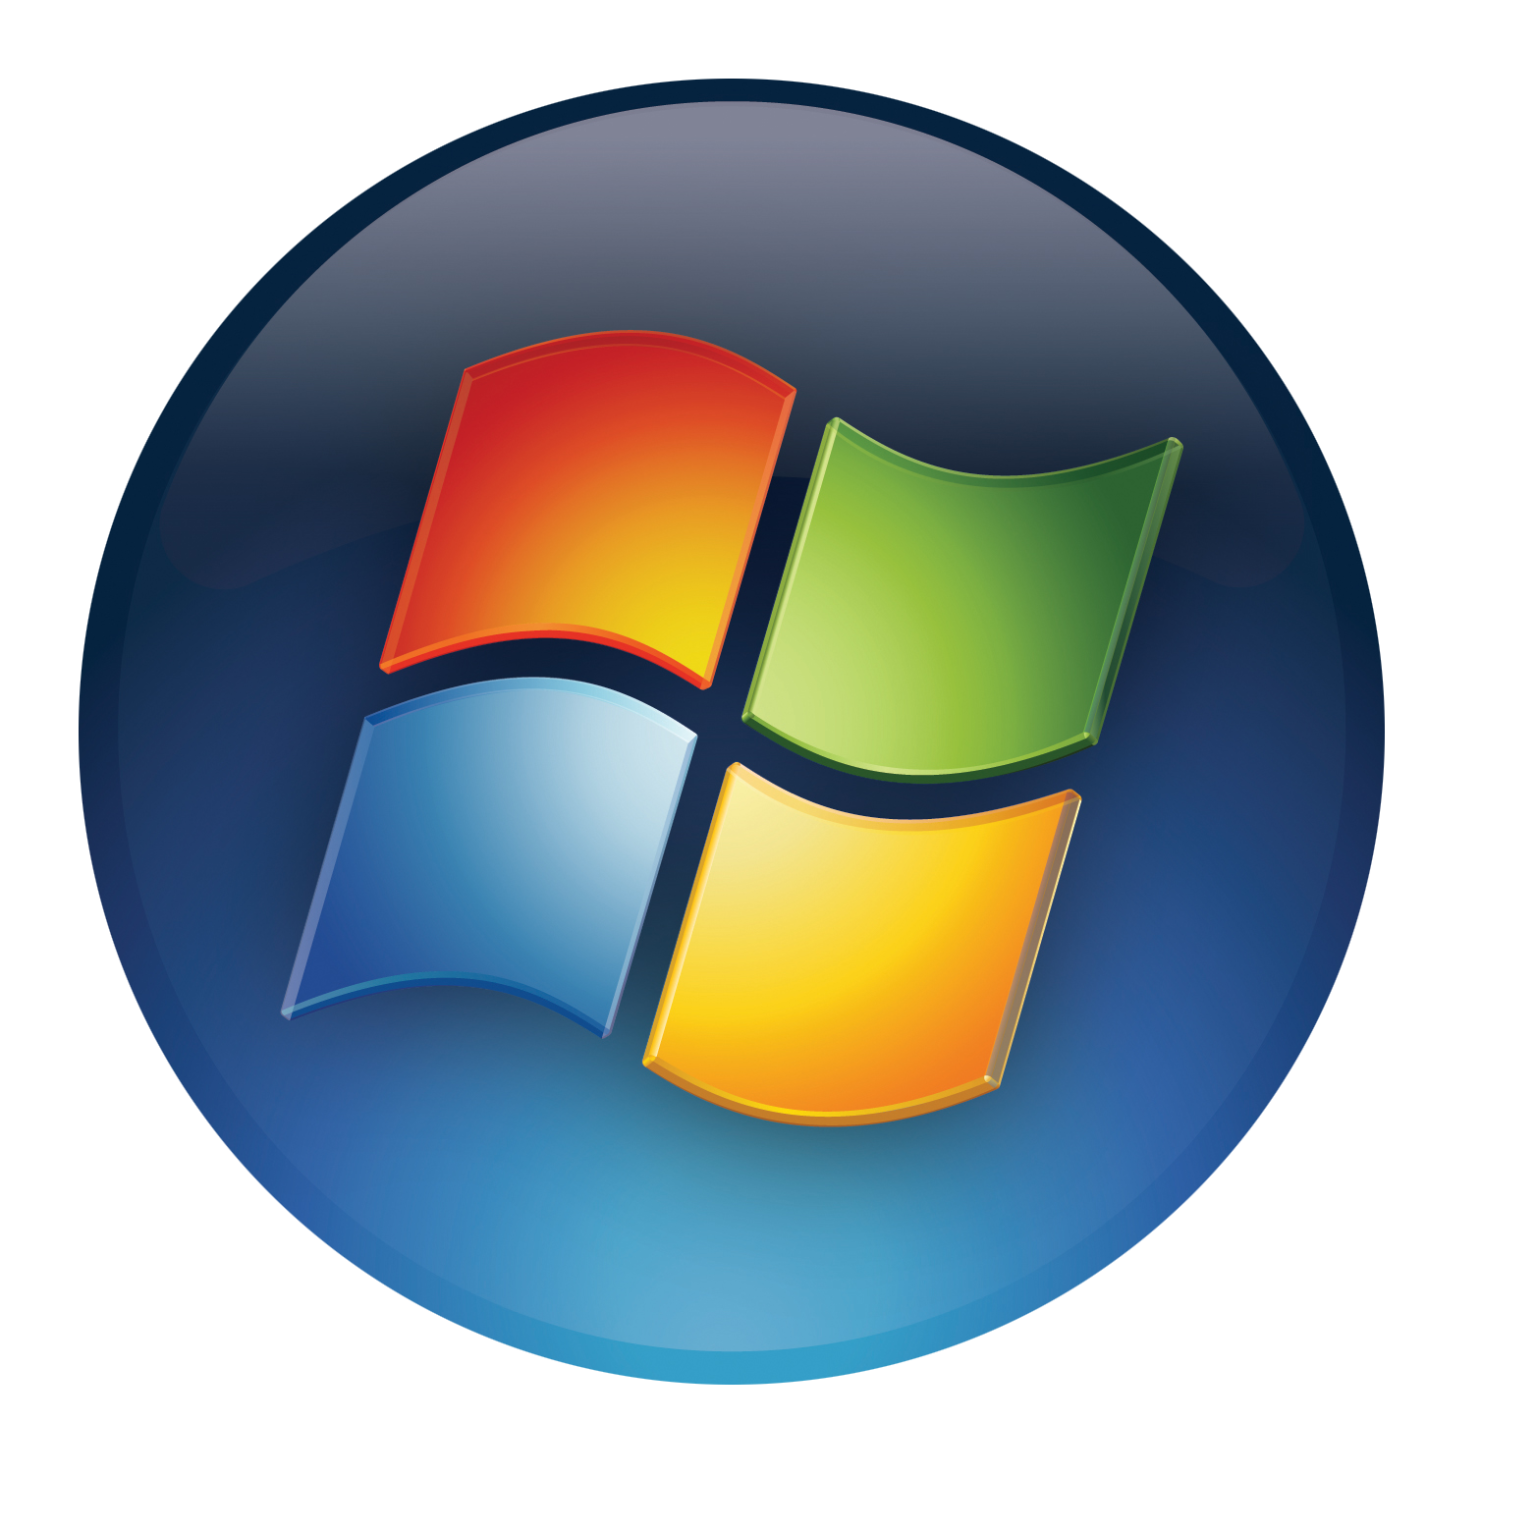 Кнопка пуск виндовс. Кнопка пуск виндовс 7. Иконка меню пуск Windows XP. Иконка пуска win 7. Программы в формате jpg